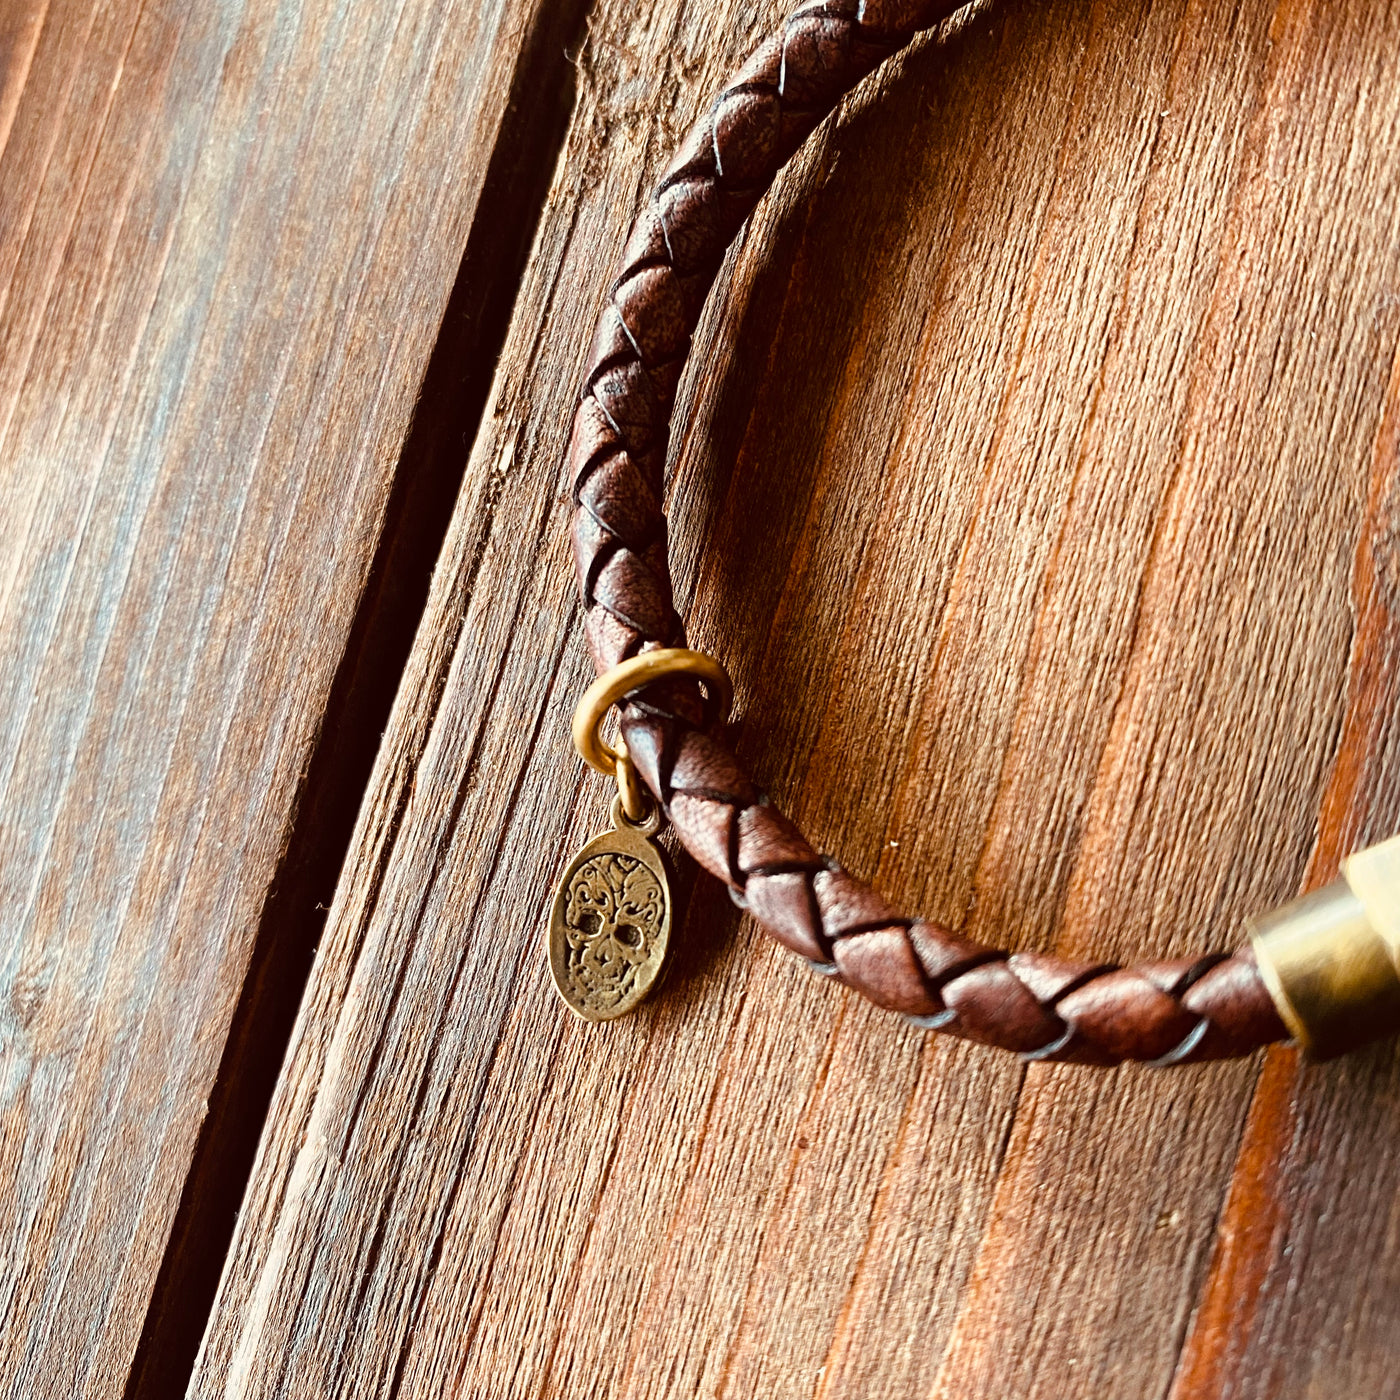 Bracelet - Leather bracelet